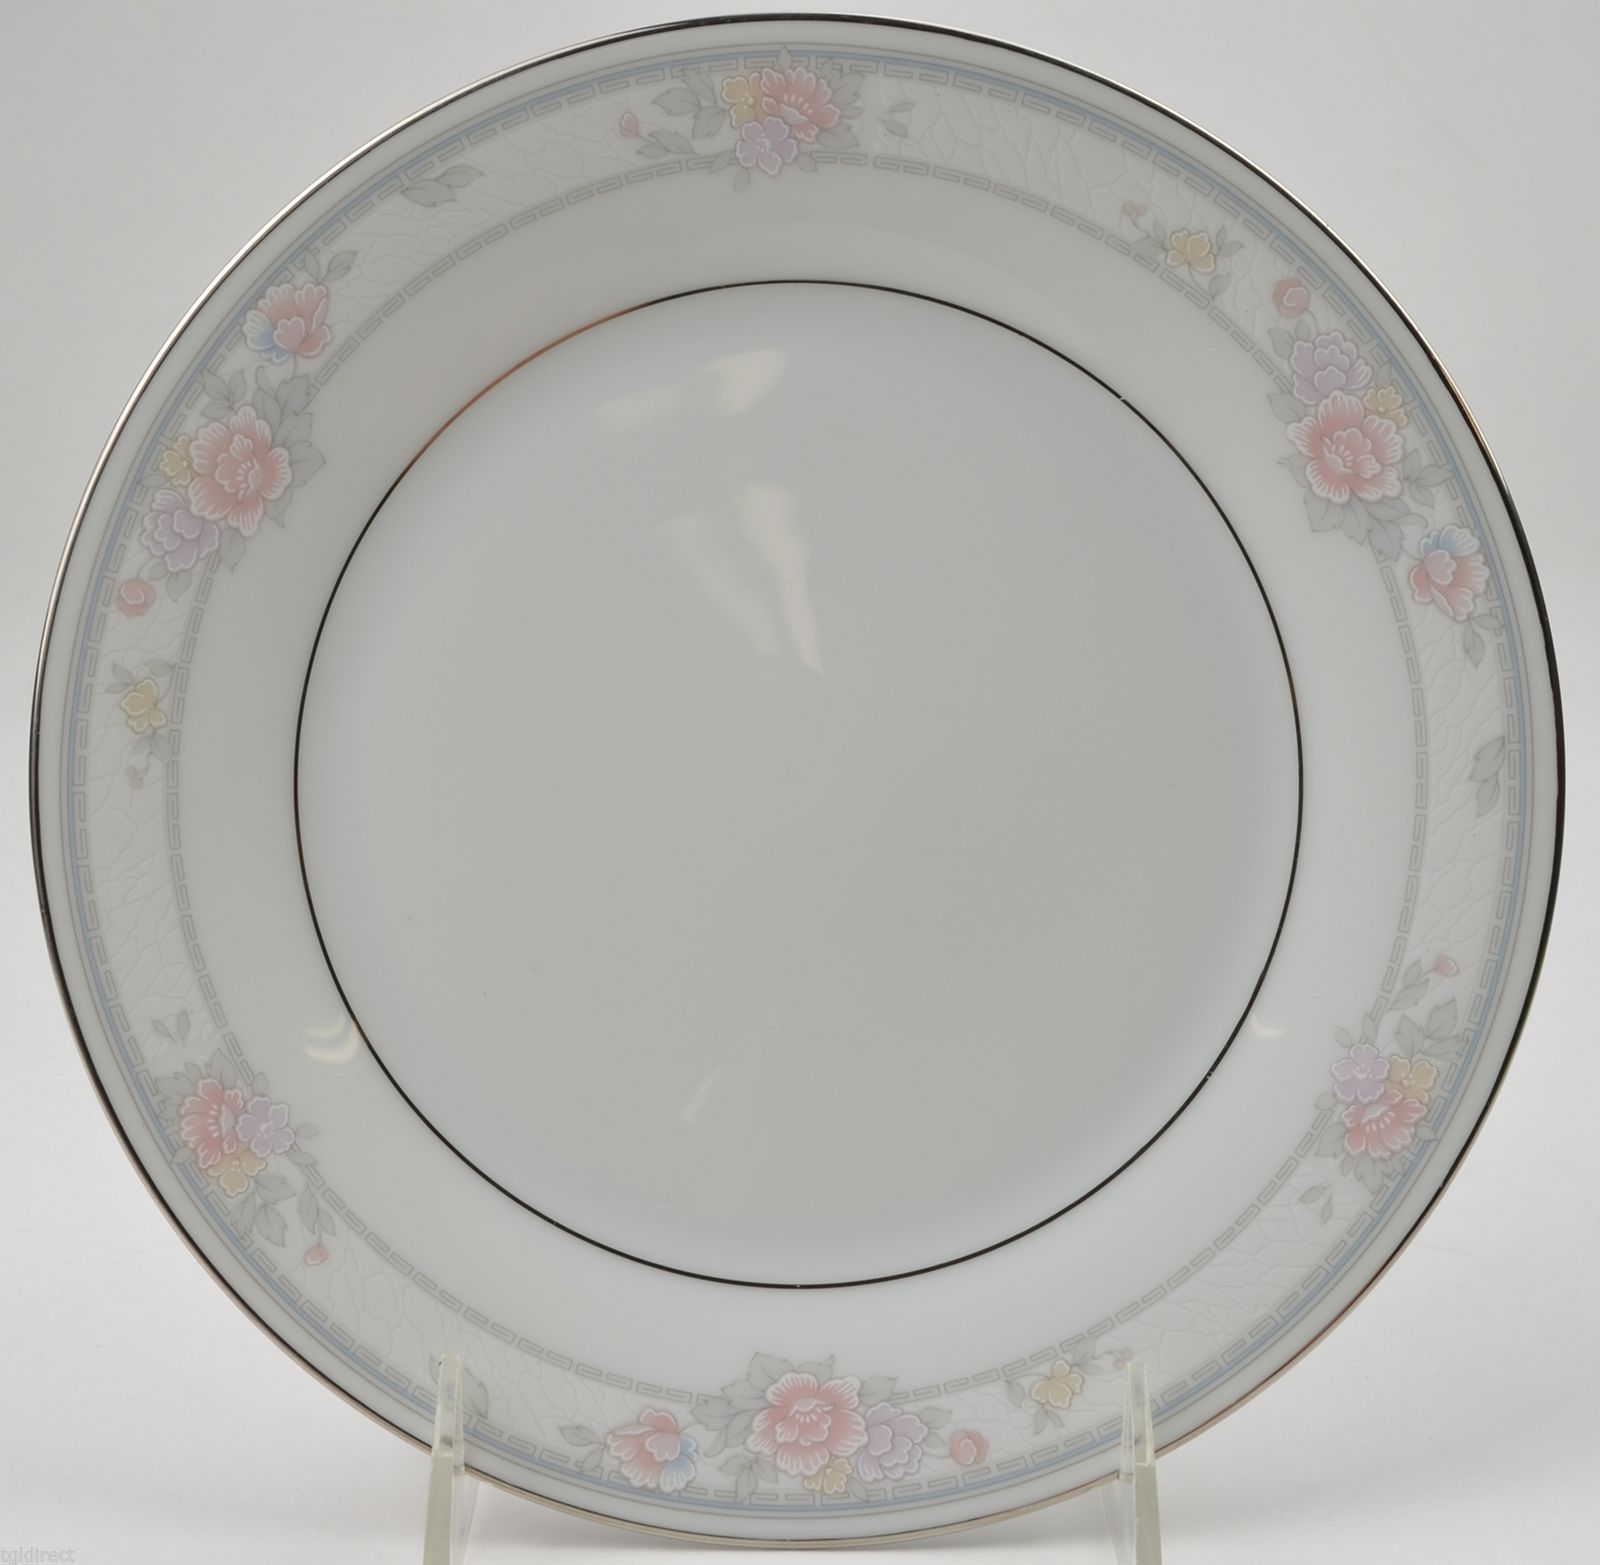 Noritake China Salad Plate Newbury Pattern 3601 Retired Replacement Dinnerware - $7.84